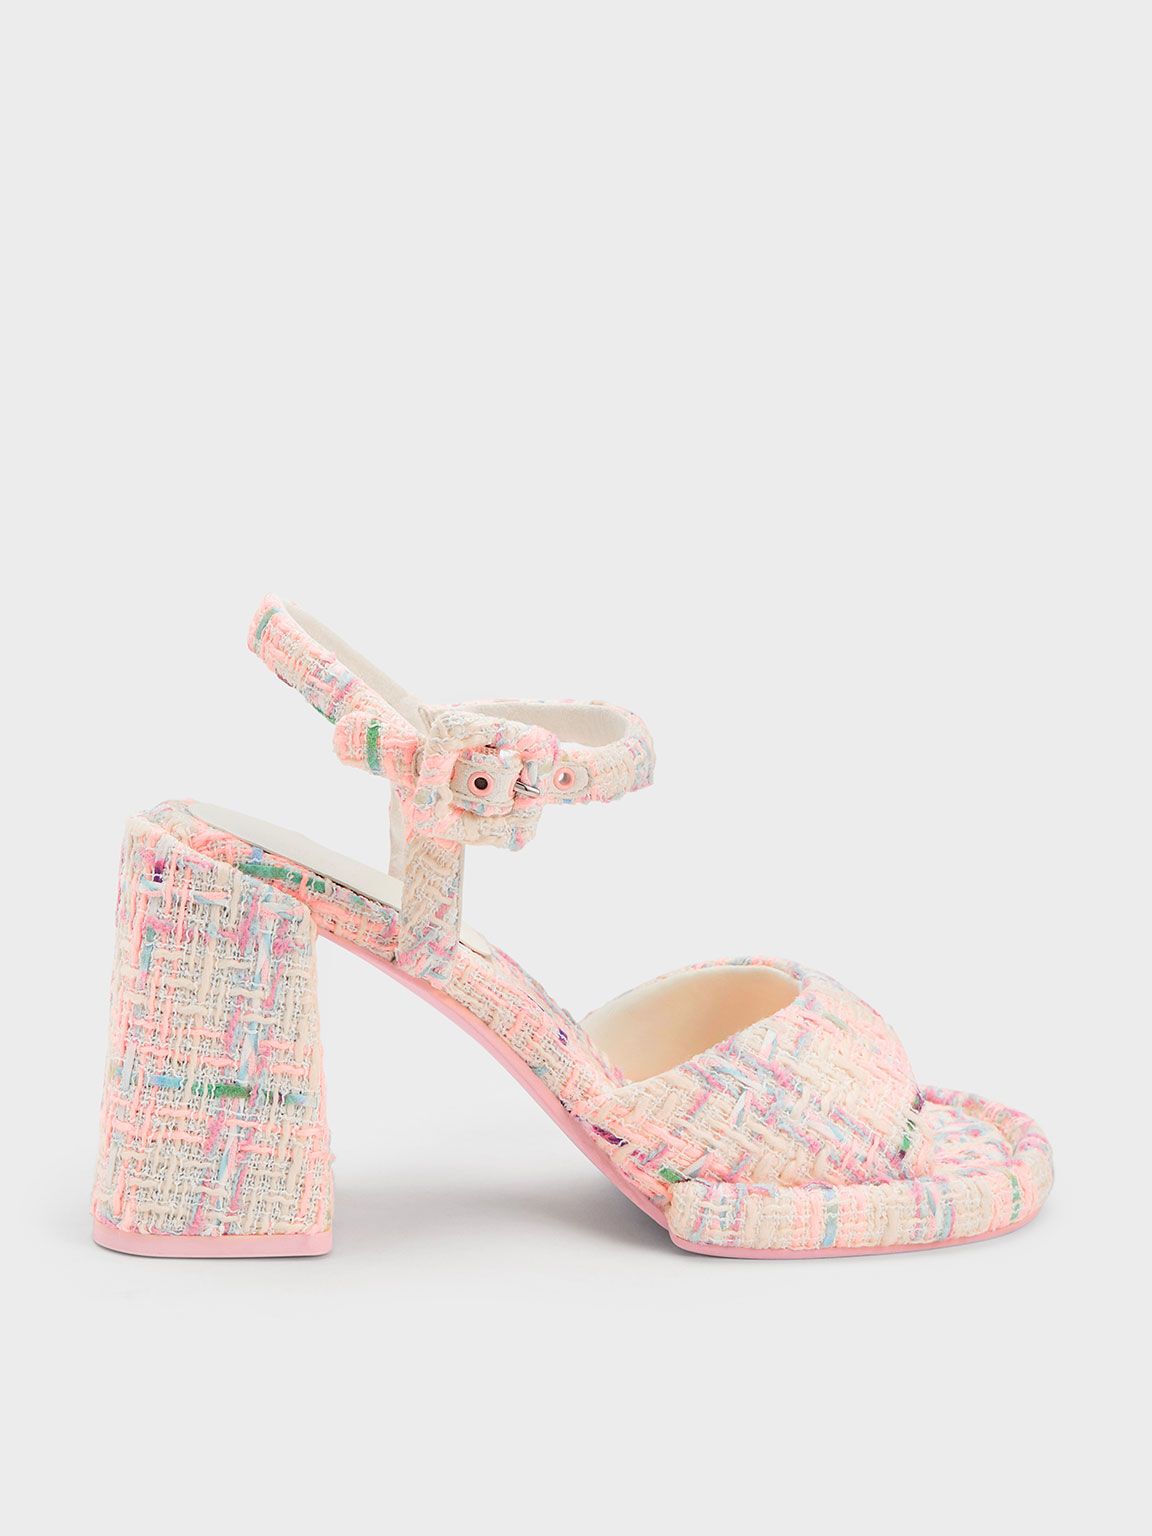 Pink Koa Thong Sandals - CHARLES & KEITH UK